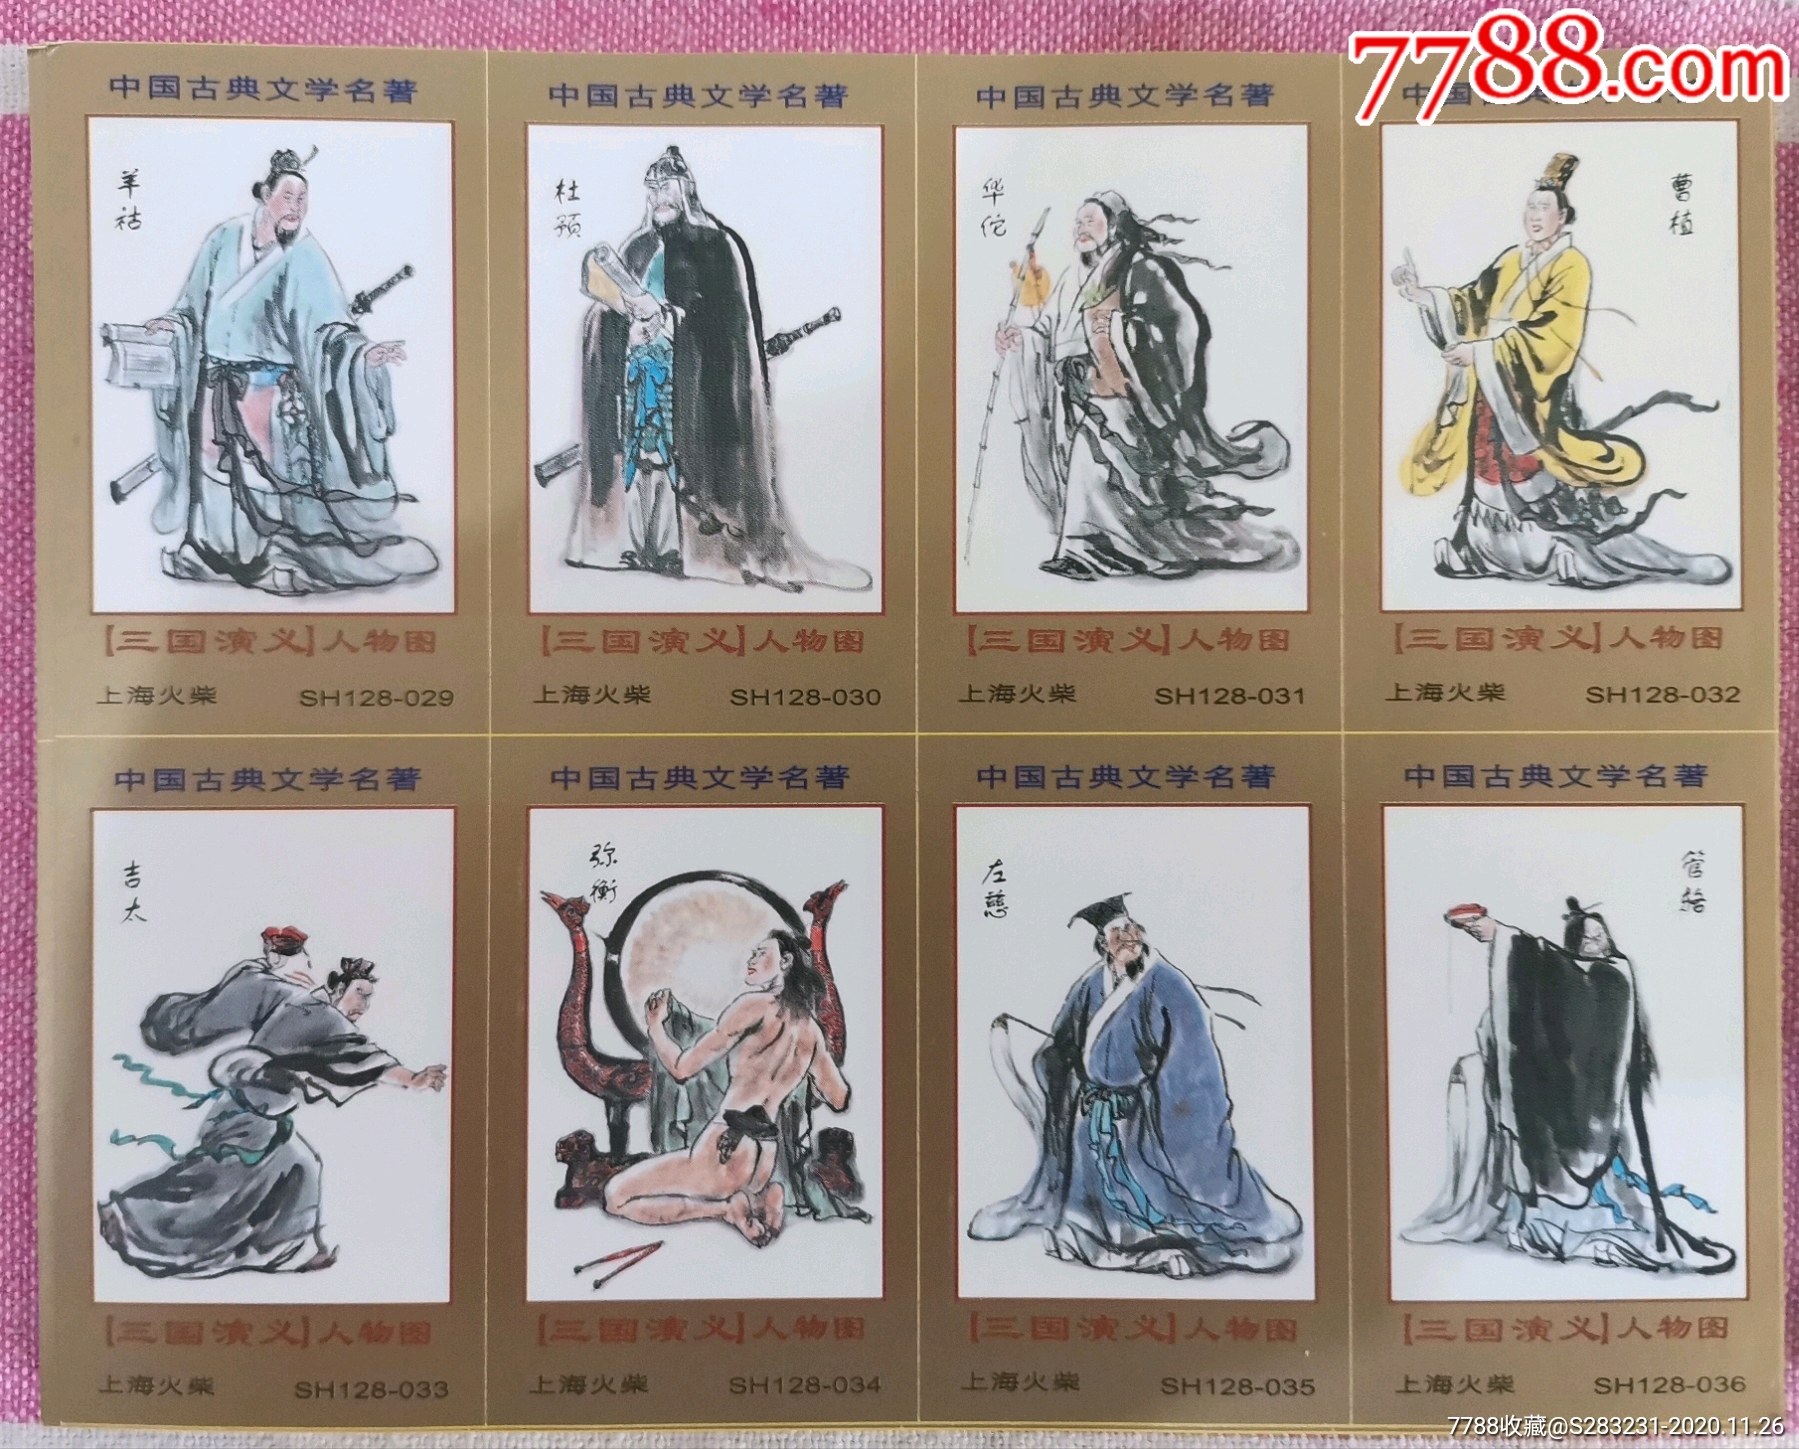 上海火柴厂火花:中国古典文学名著《三国演义》人物图,一套128 1=129